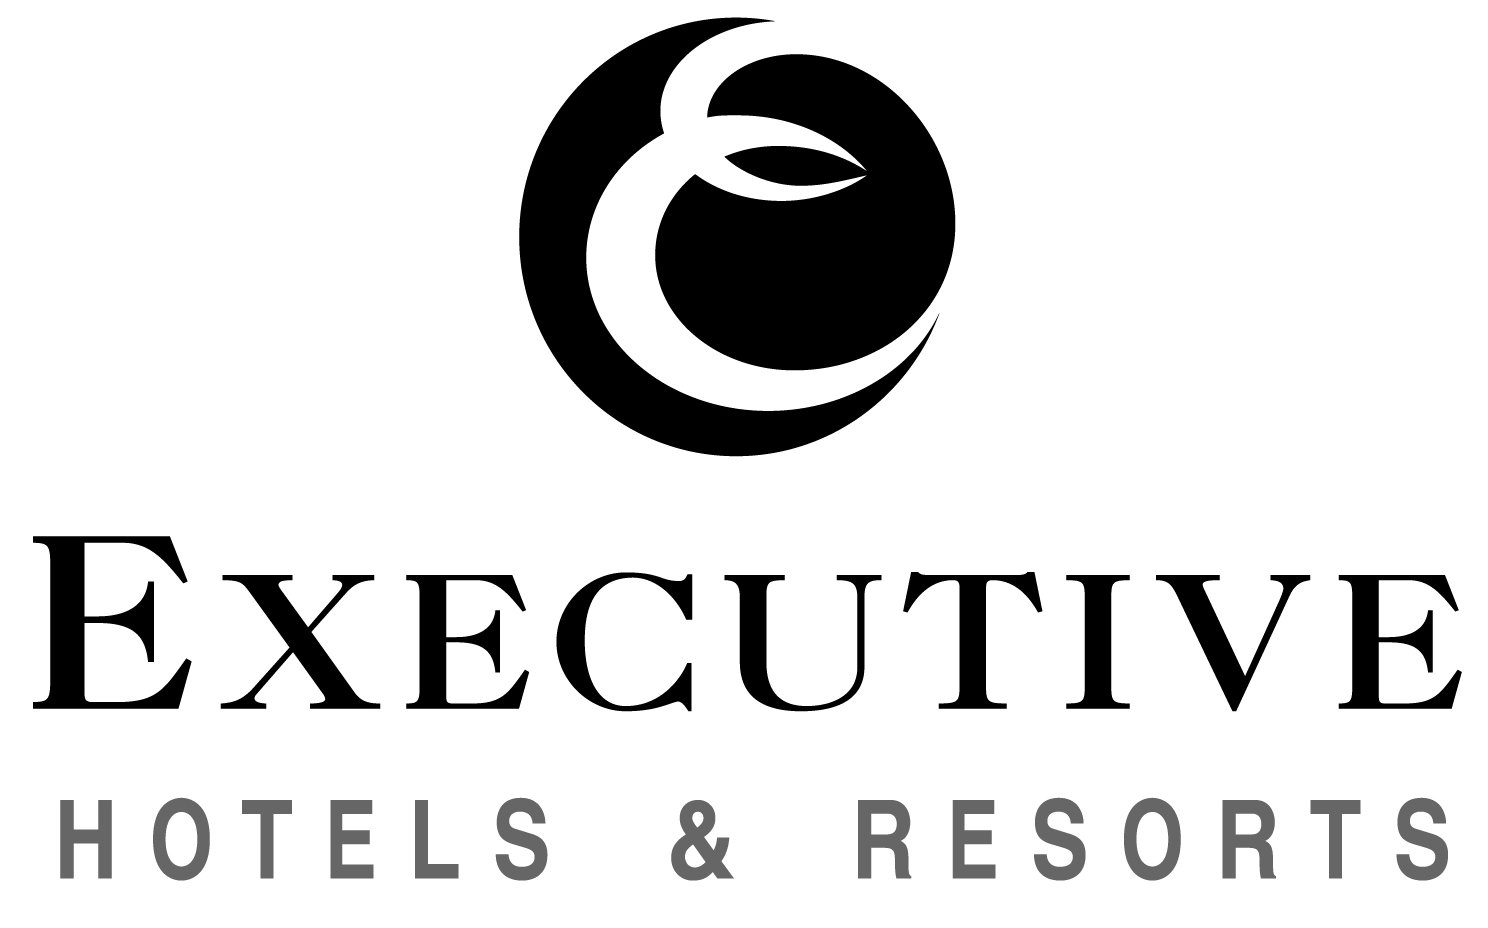 Executive hotels and resorts logo